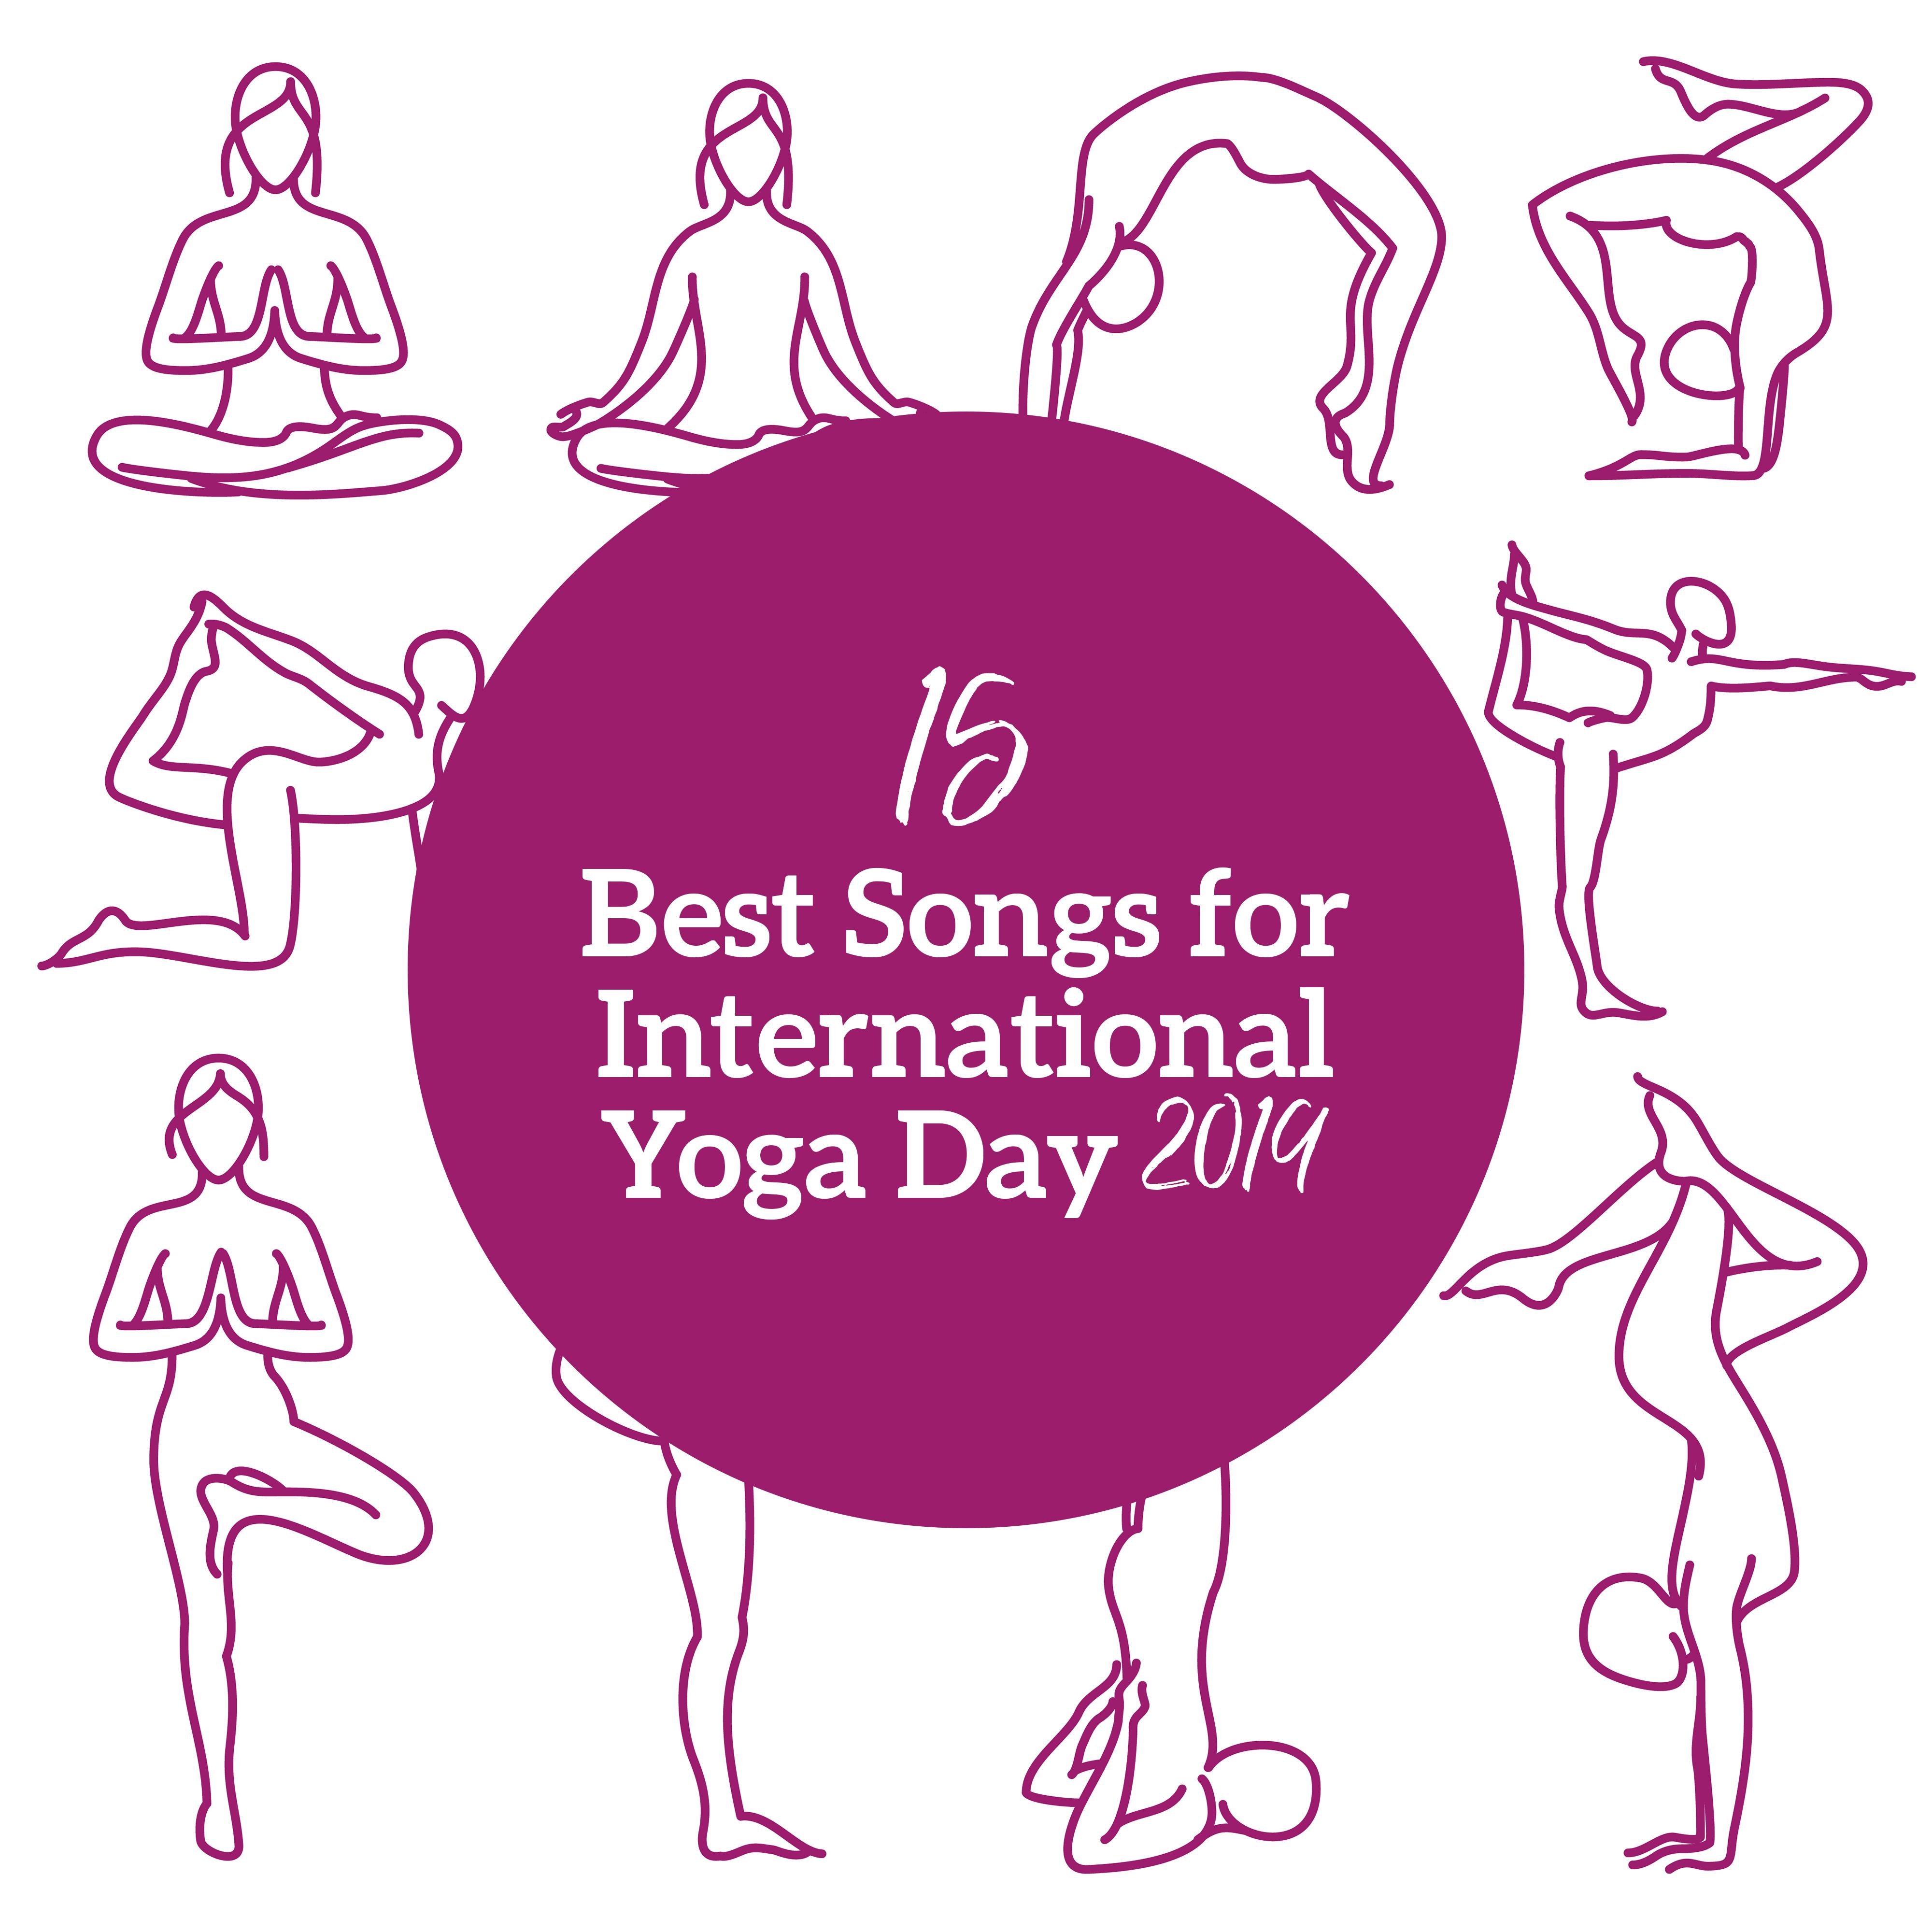 15 Best Songs for International Yoga Day 2019